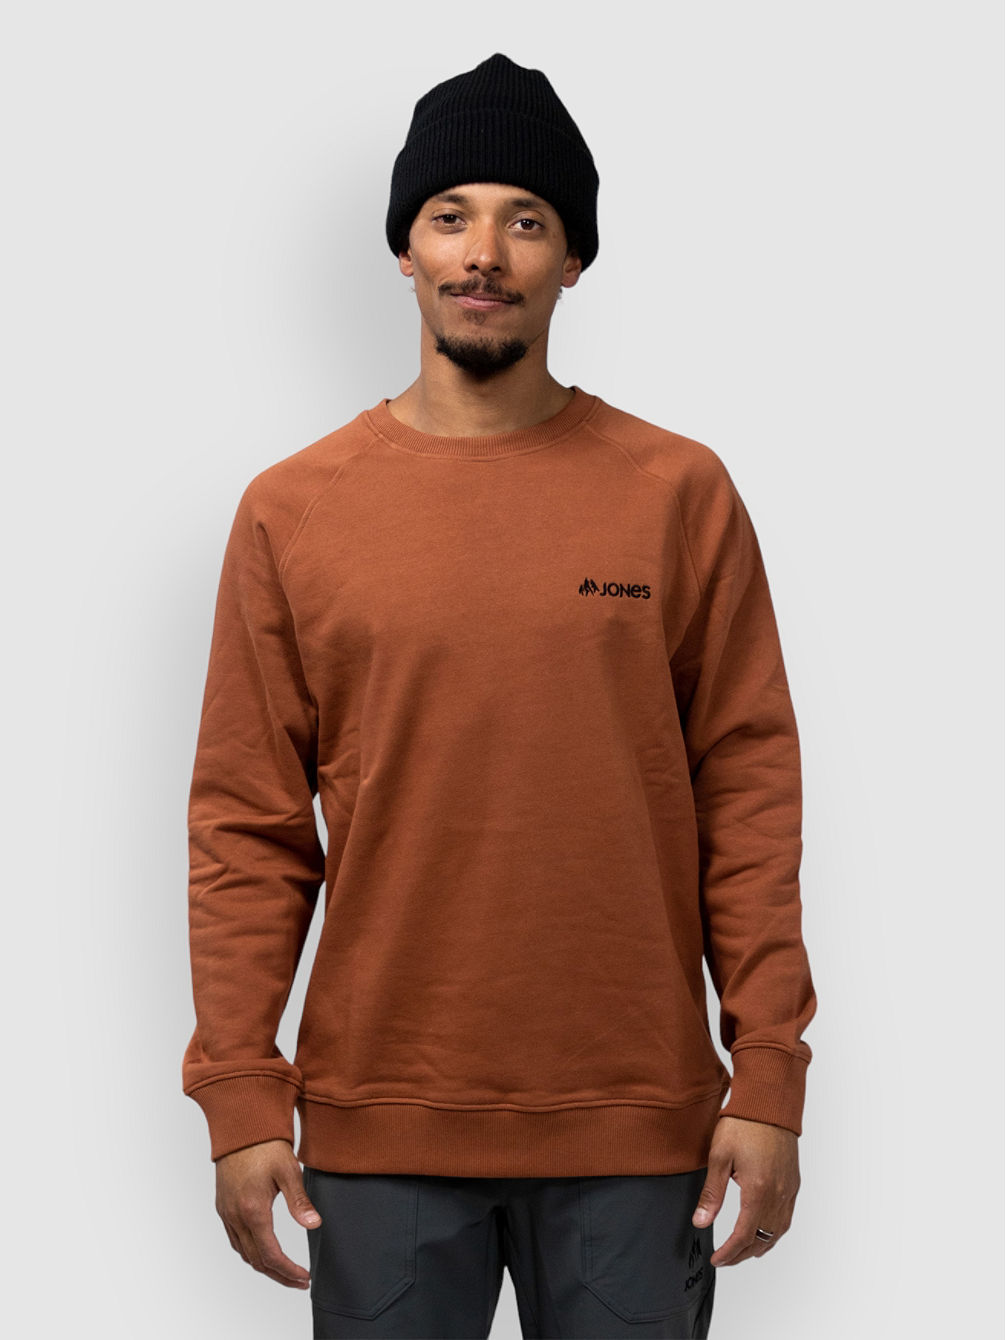 Sierra Sweater